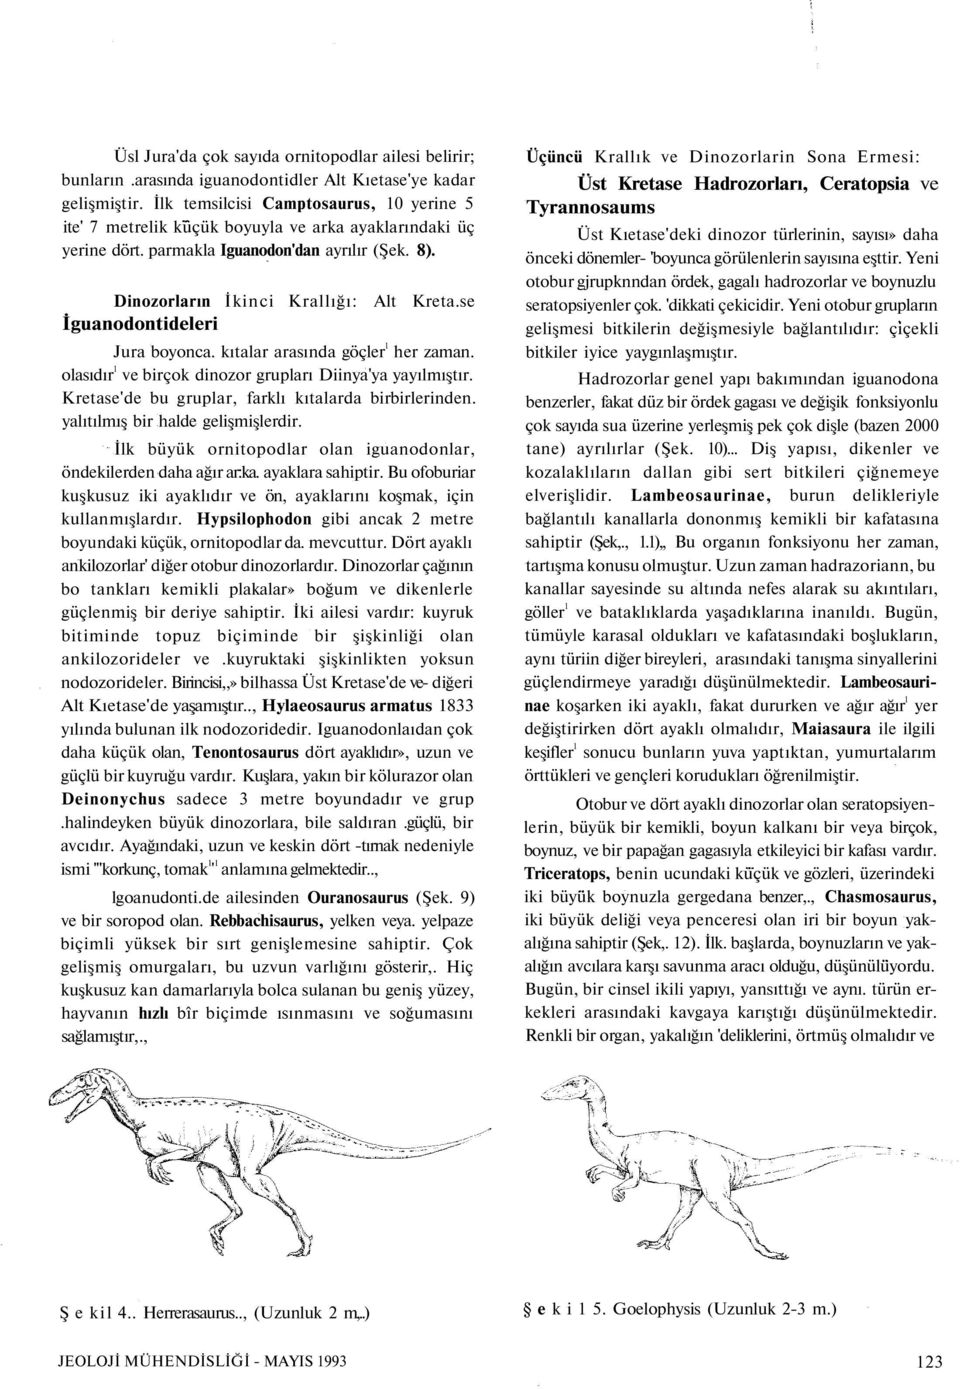 Dinozorların İkinci Krallığı: İguanodontideleri Alt Kreta.se Jura boyonca. kıtalar arasında göçler 1 her zaman. olasıdır 1 ve birçok dinozor grupları Diinya'ya yayılmıştır.